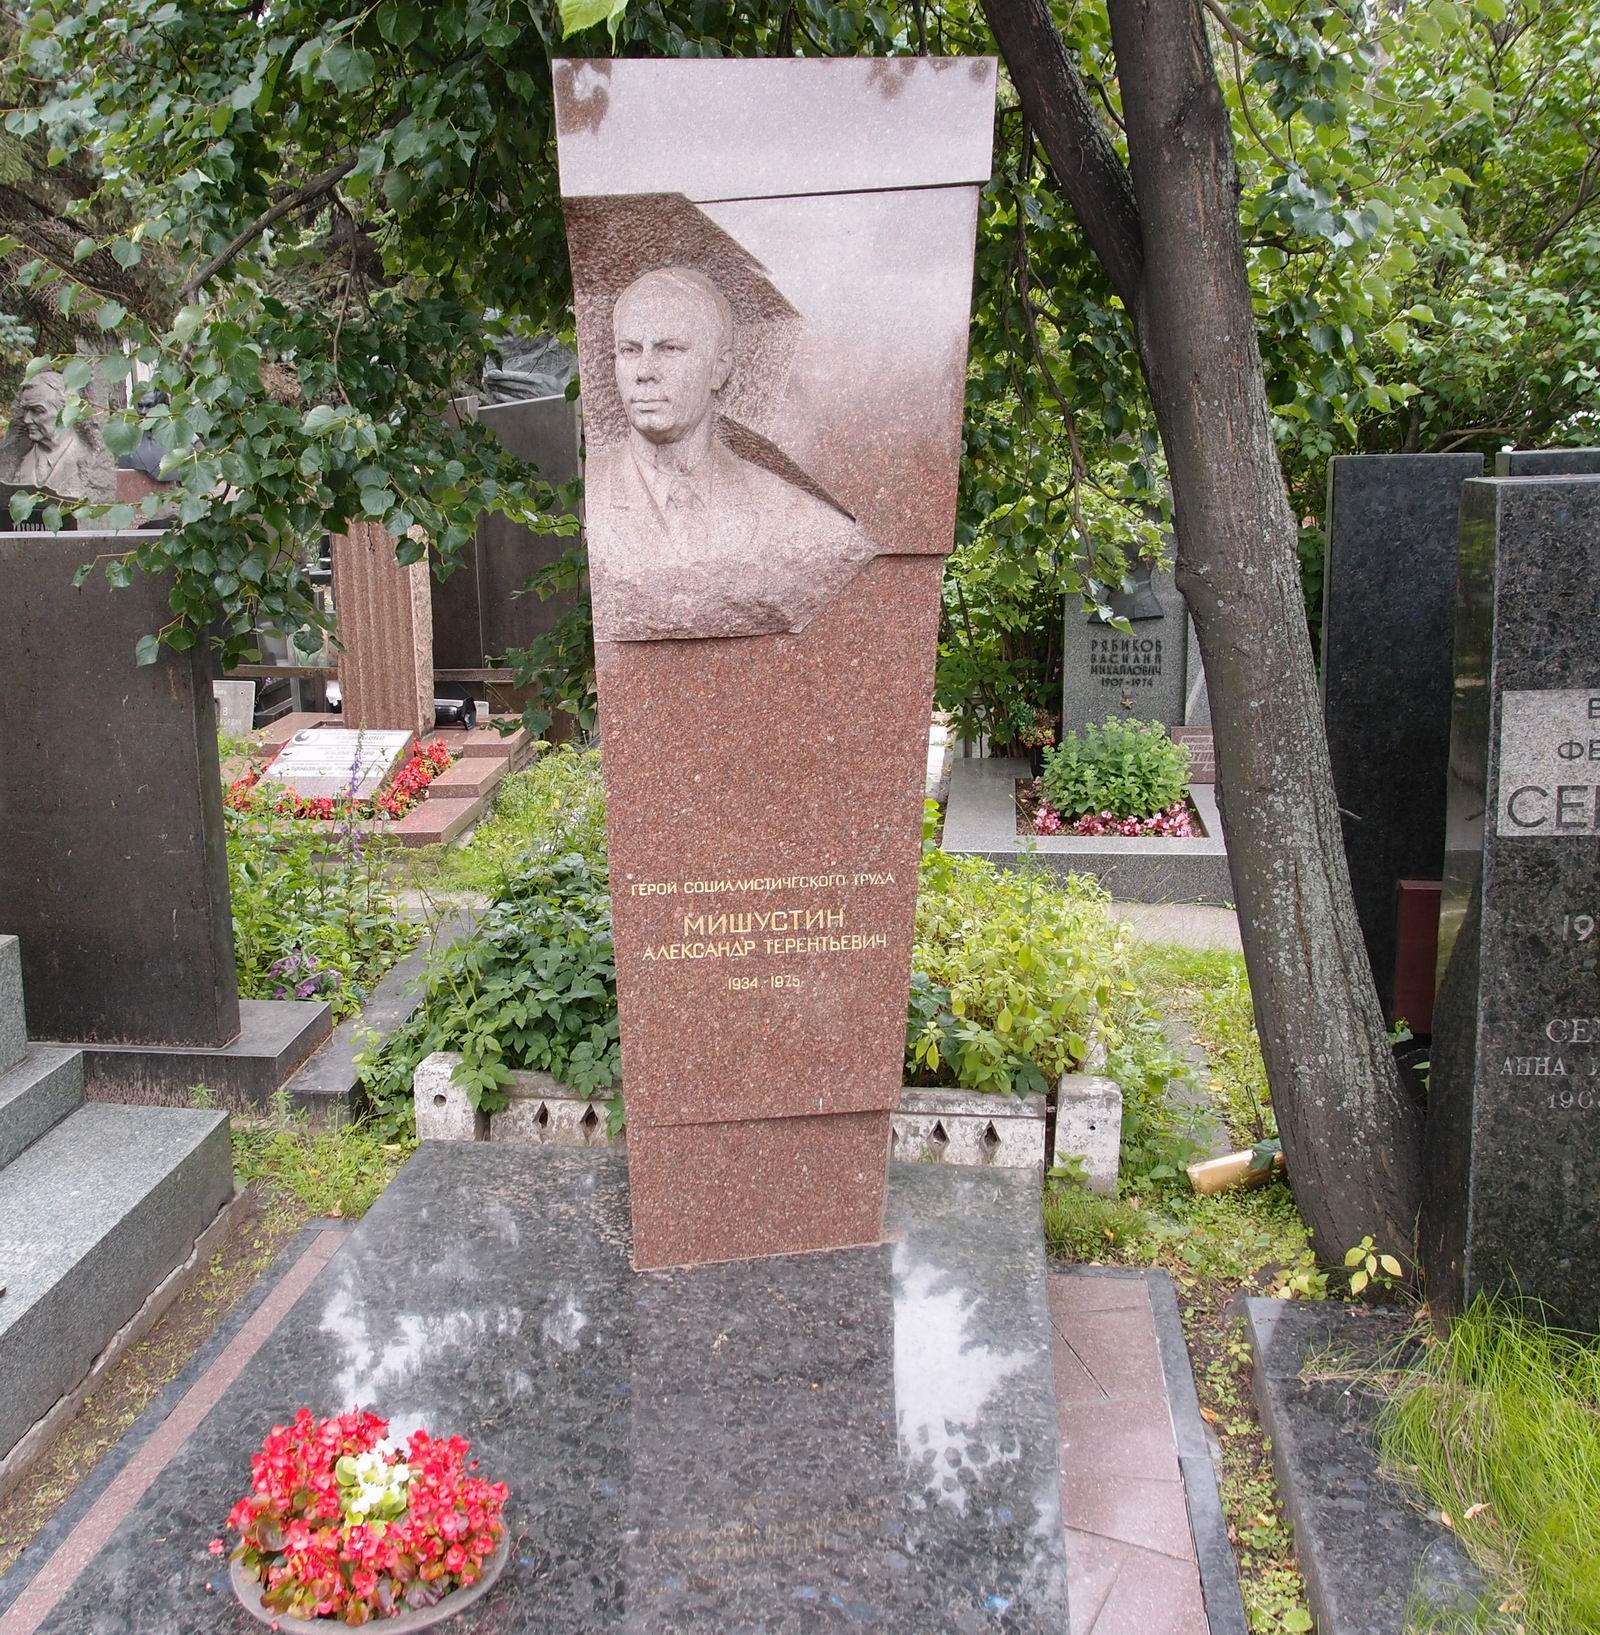 Памятник на могиле Мишустина А.Т. (1934-1975), ск. В.Сонин, арх. М.Круглов, С.Кулев, на Новодевичьем кладбище (7-10-18).